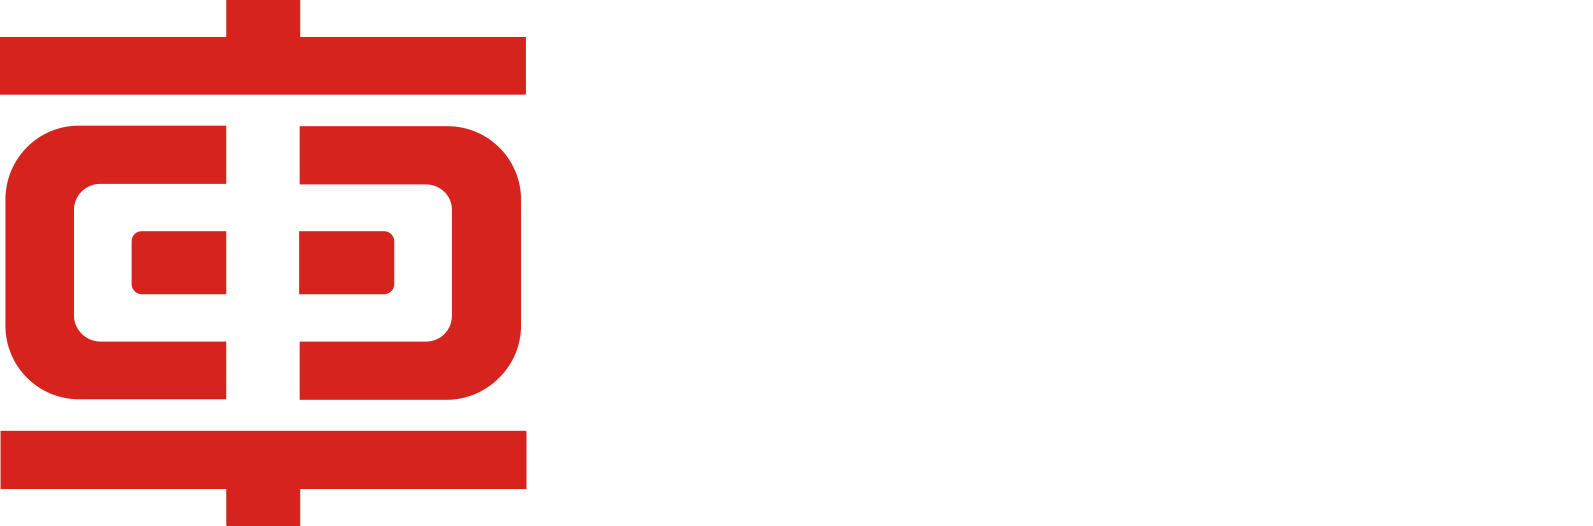 Zhuzhou CRRC Times Electric logo grand pour les fonds sombres (PNG transparent)